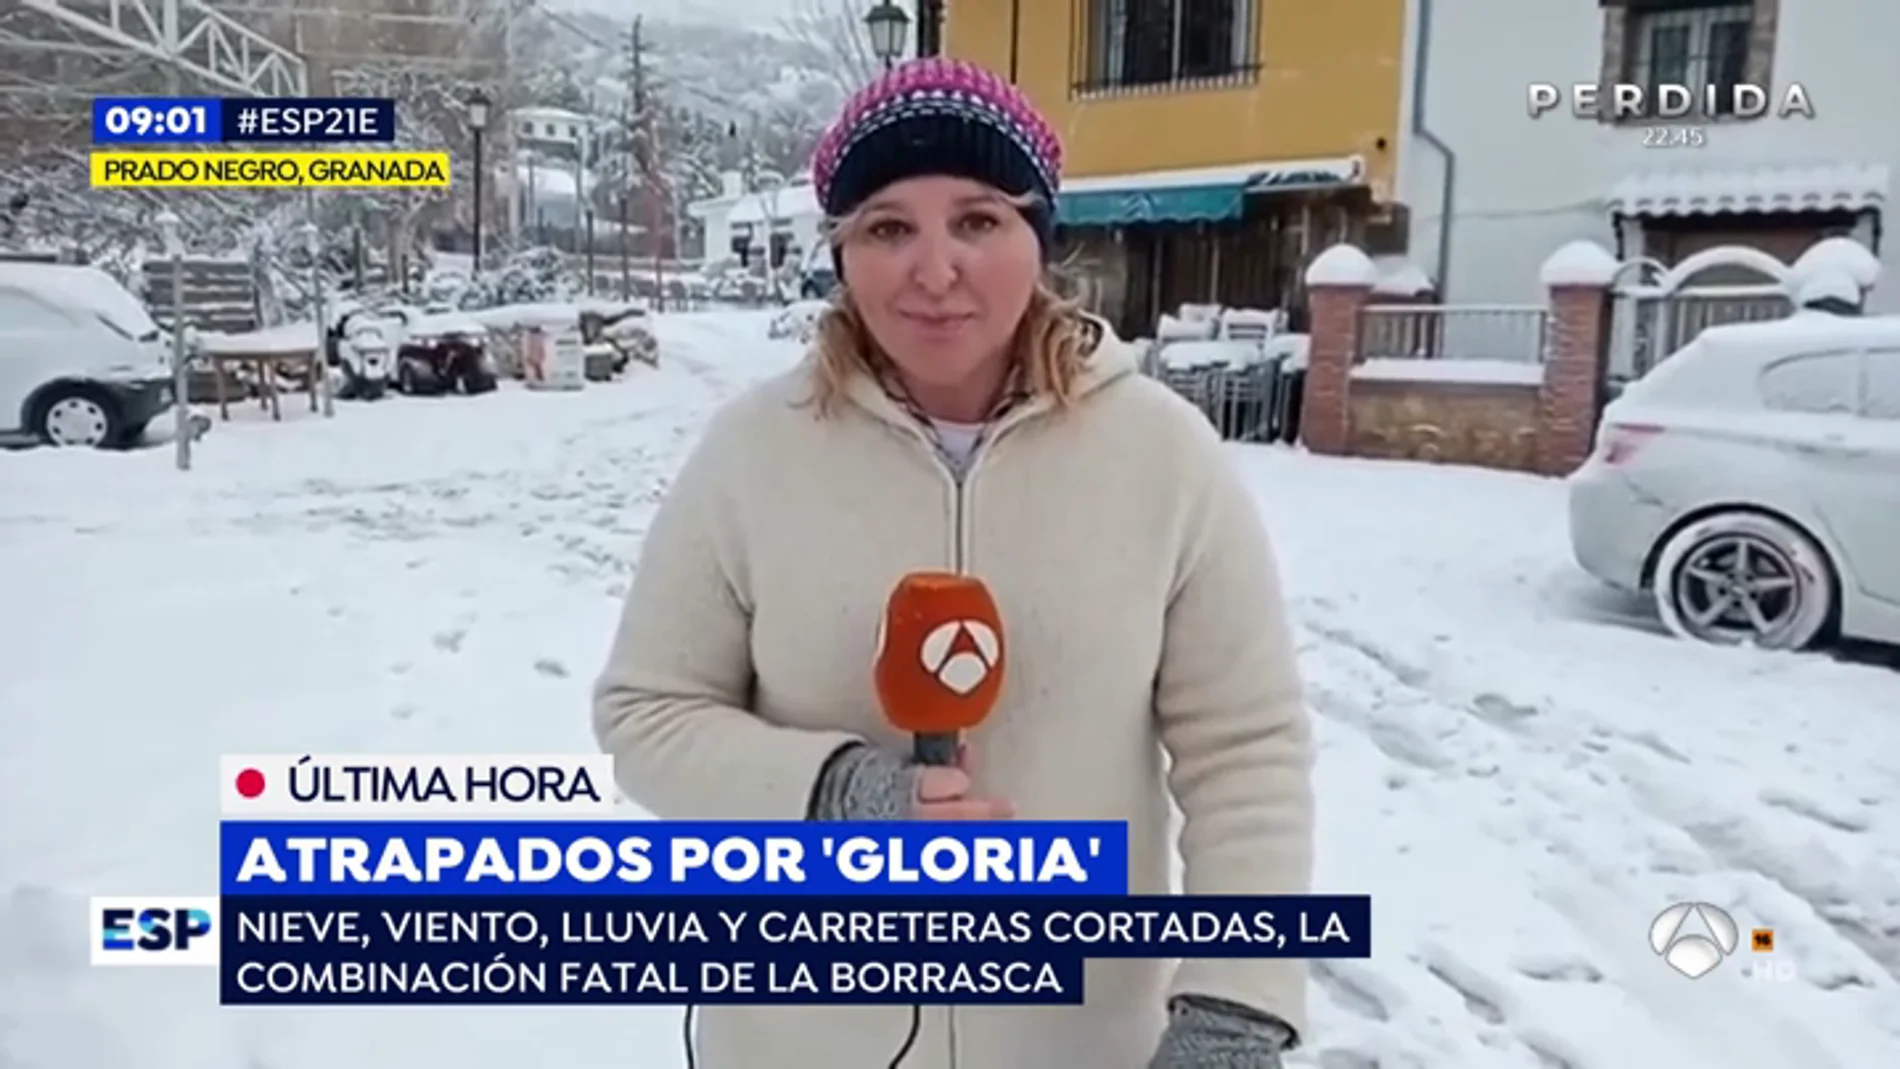 Un equipo de Espejo Público, atrapado por la nieve en Granada pasa la noche en casa de un vecino 